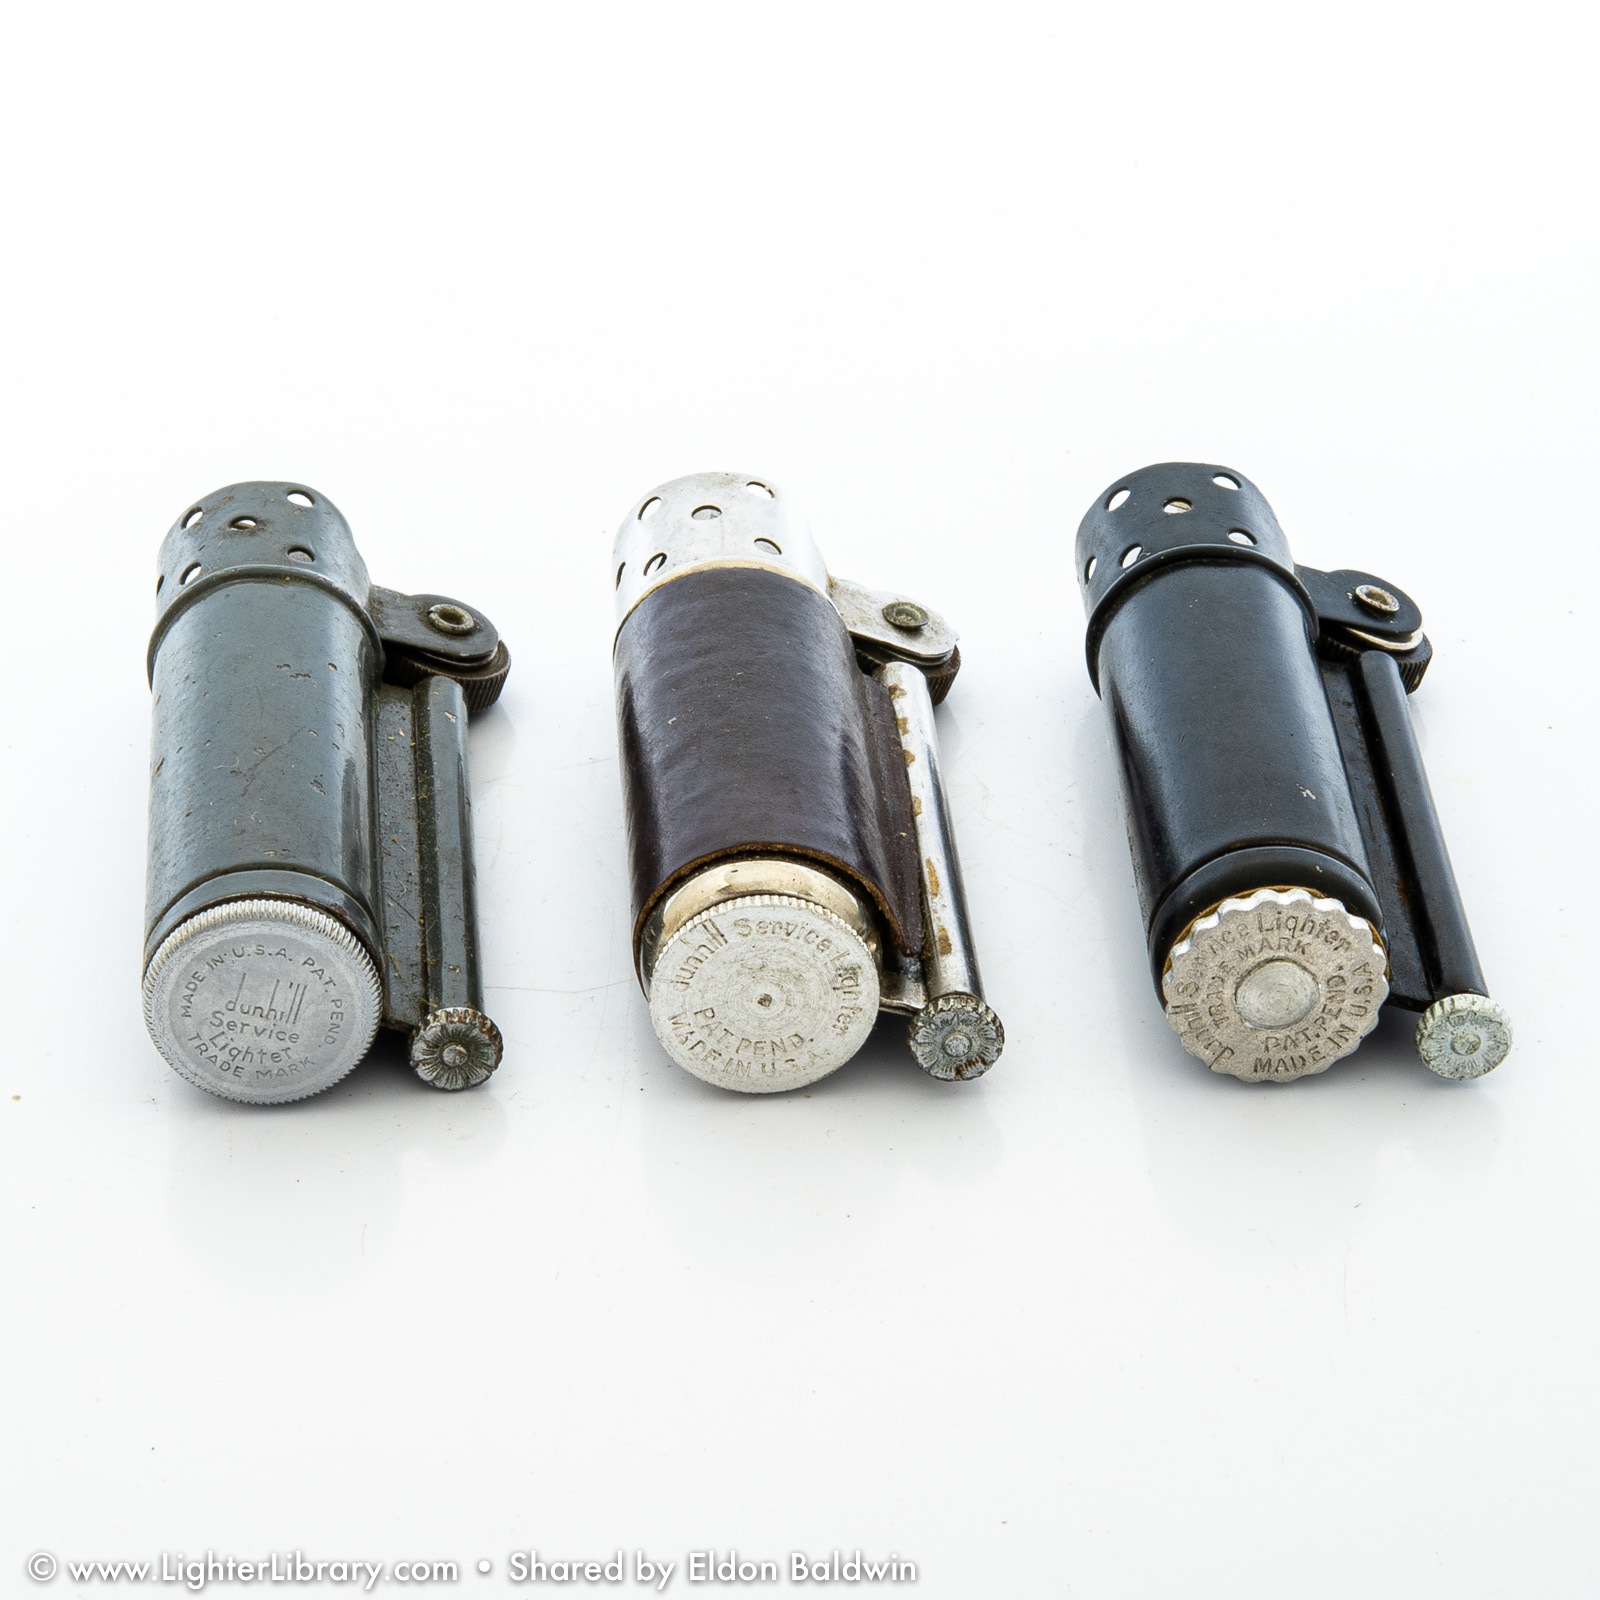 Håndværker Civic Misforståelse Alfred Dunhill Of London - Dunhill & Parker Service Lighters